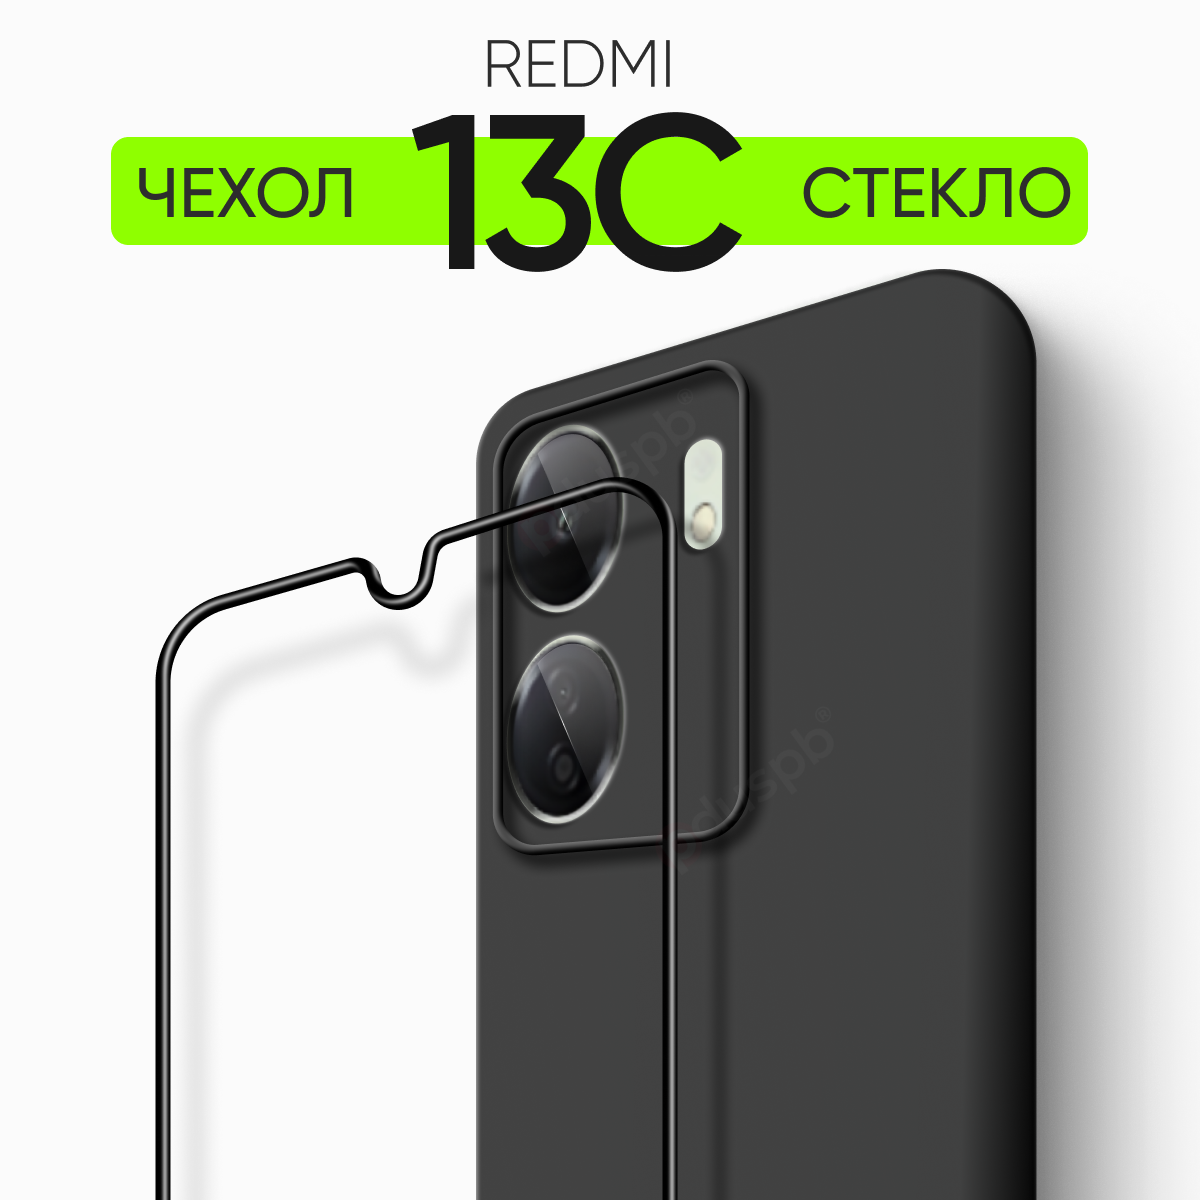 Комплект 2 в 1: Чехол № 80 + стекло Redmi 13C 4G / противоударный защитный силиконовый клип-кейс чехол на Редми 13С 13C Xiaomi Ксиоми Сяоми 4 джи